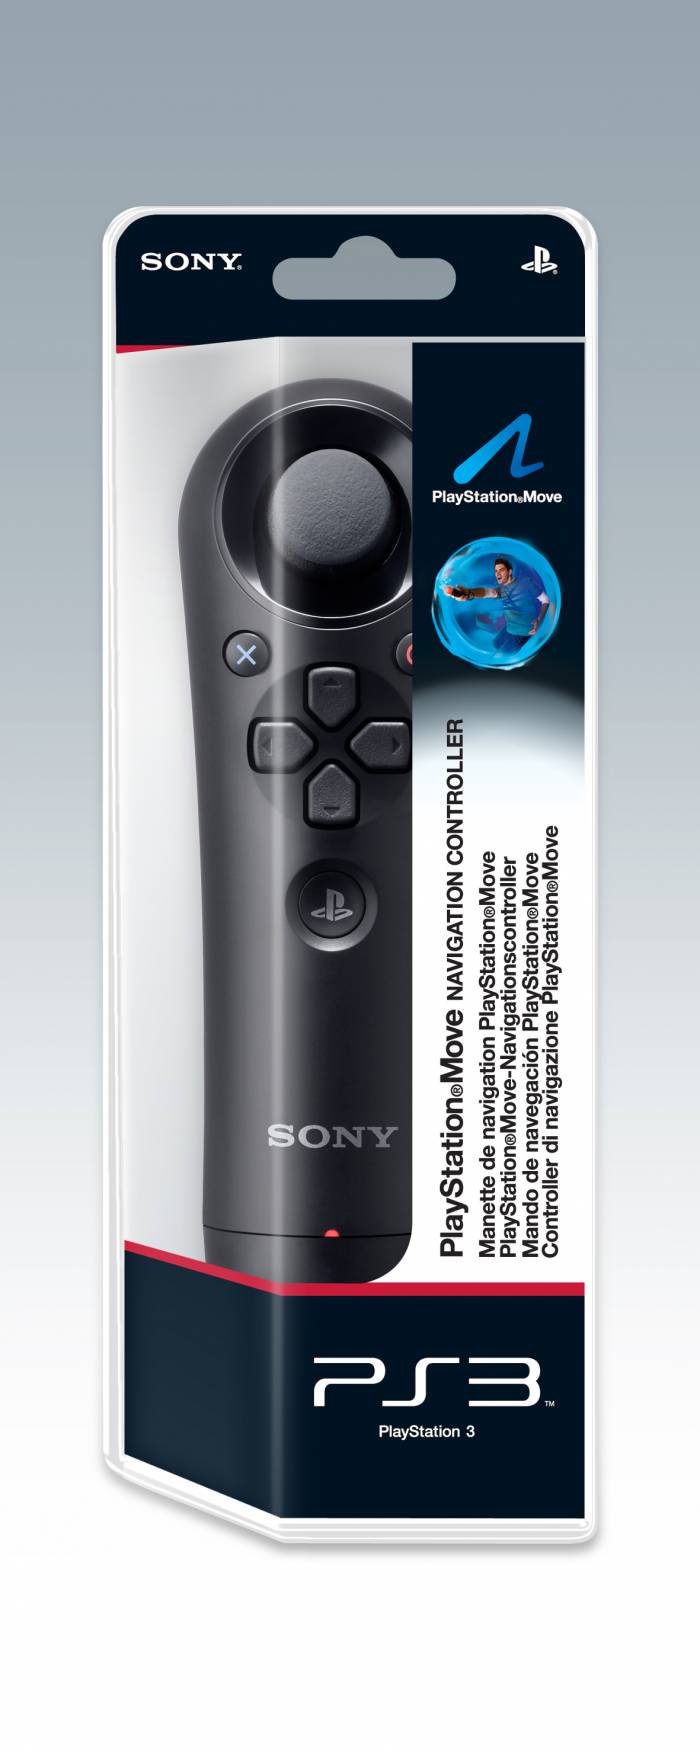  Satılık Sıfır - Sony Ps3 Move Navıgatıon Controller